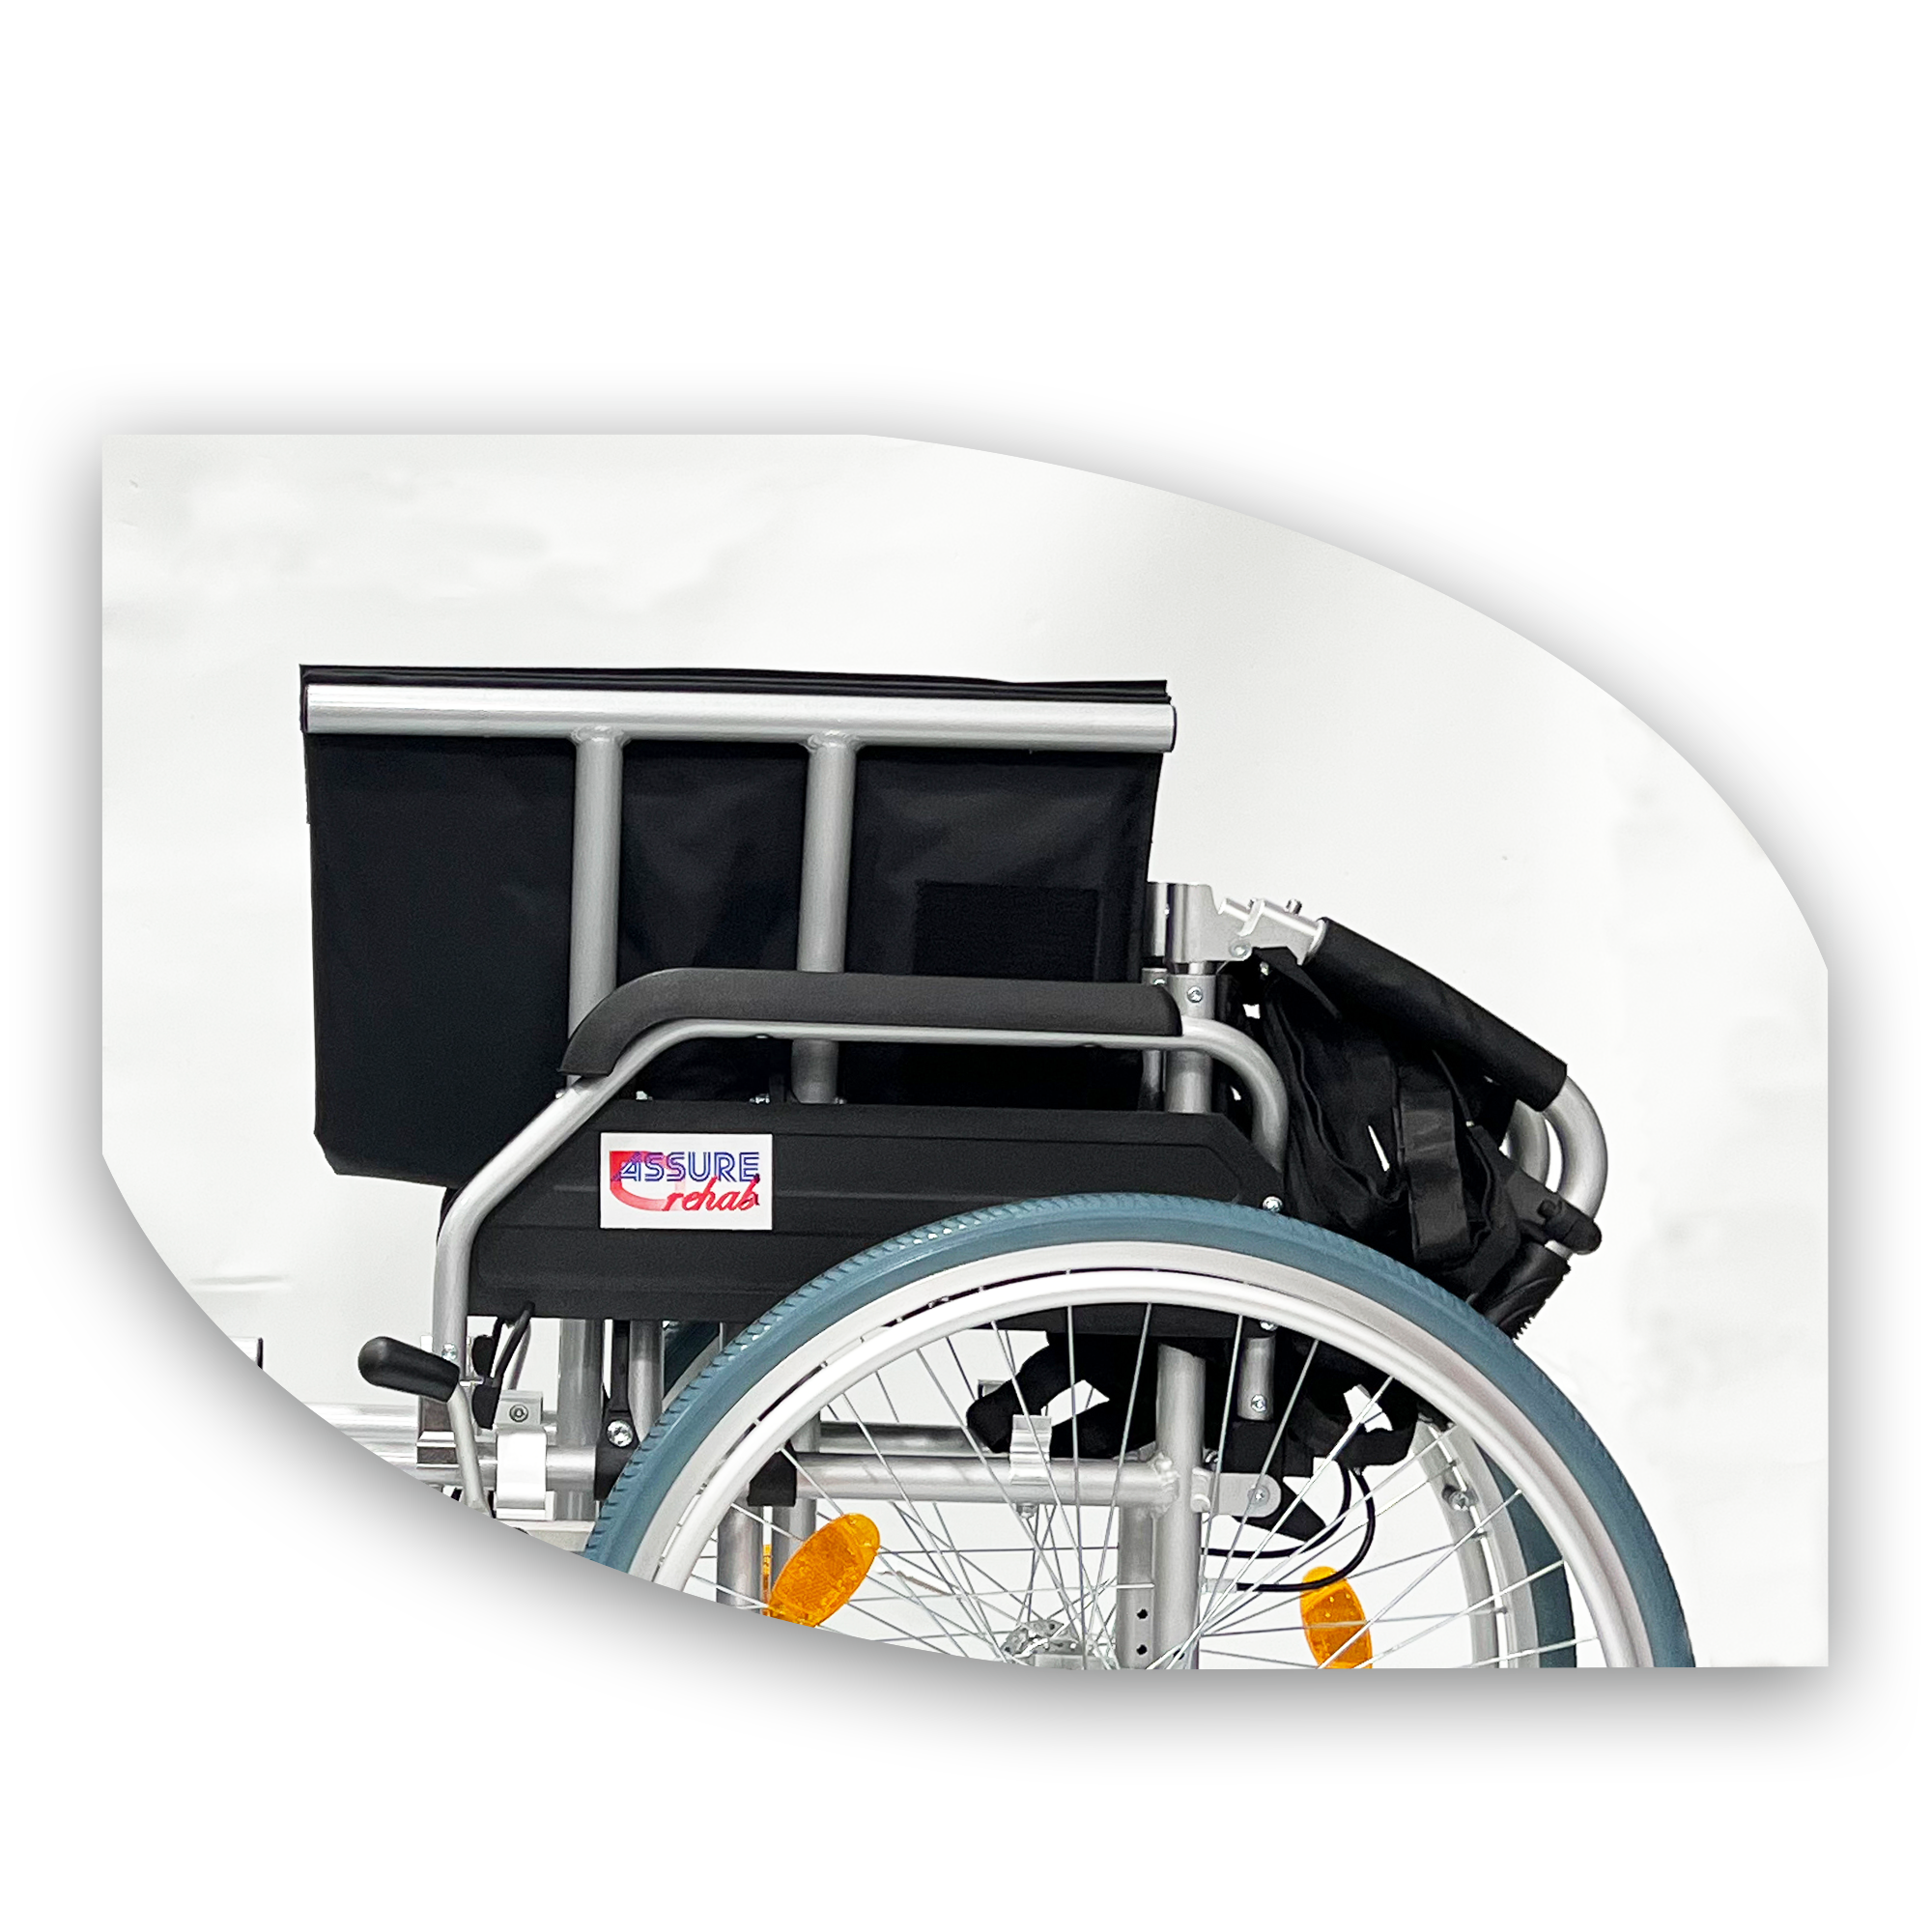 assure rehab bariatric aluminium detachable wheelchair